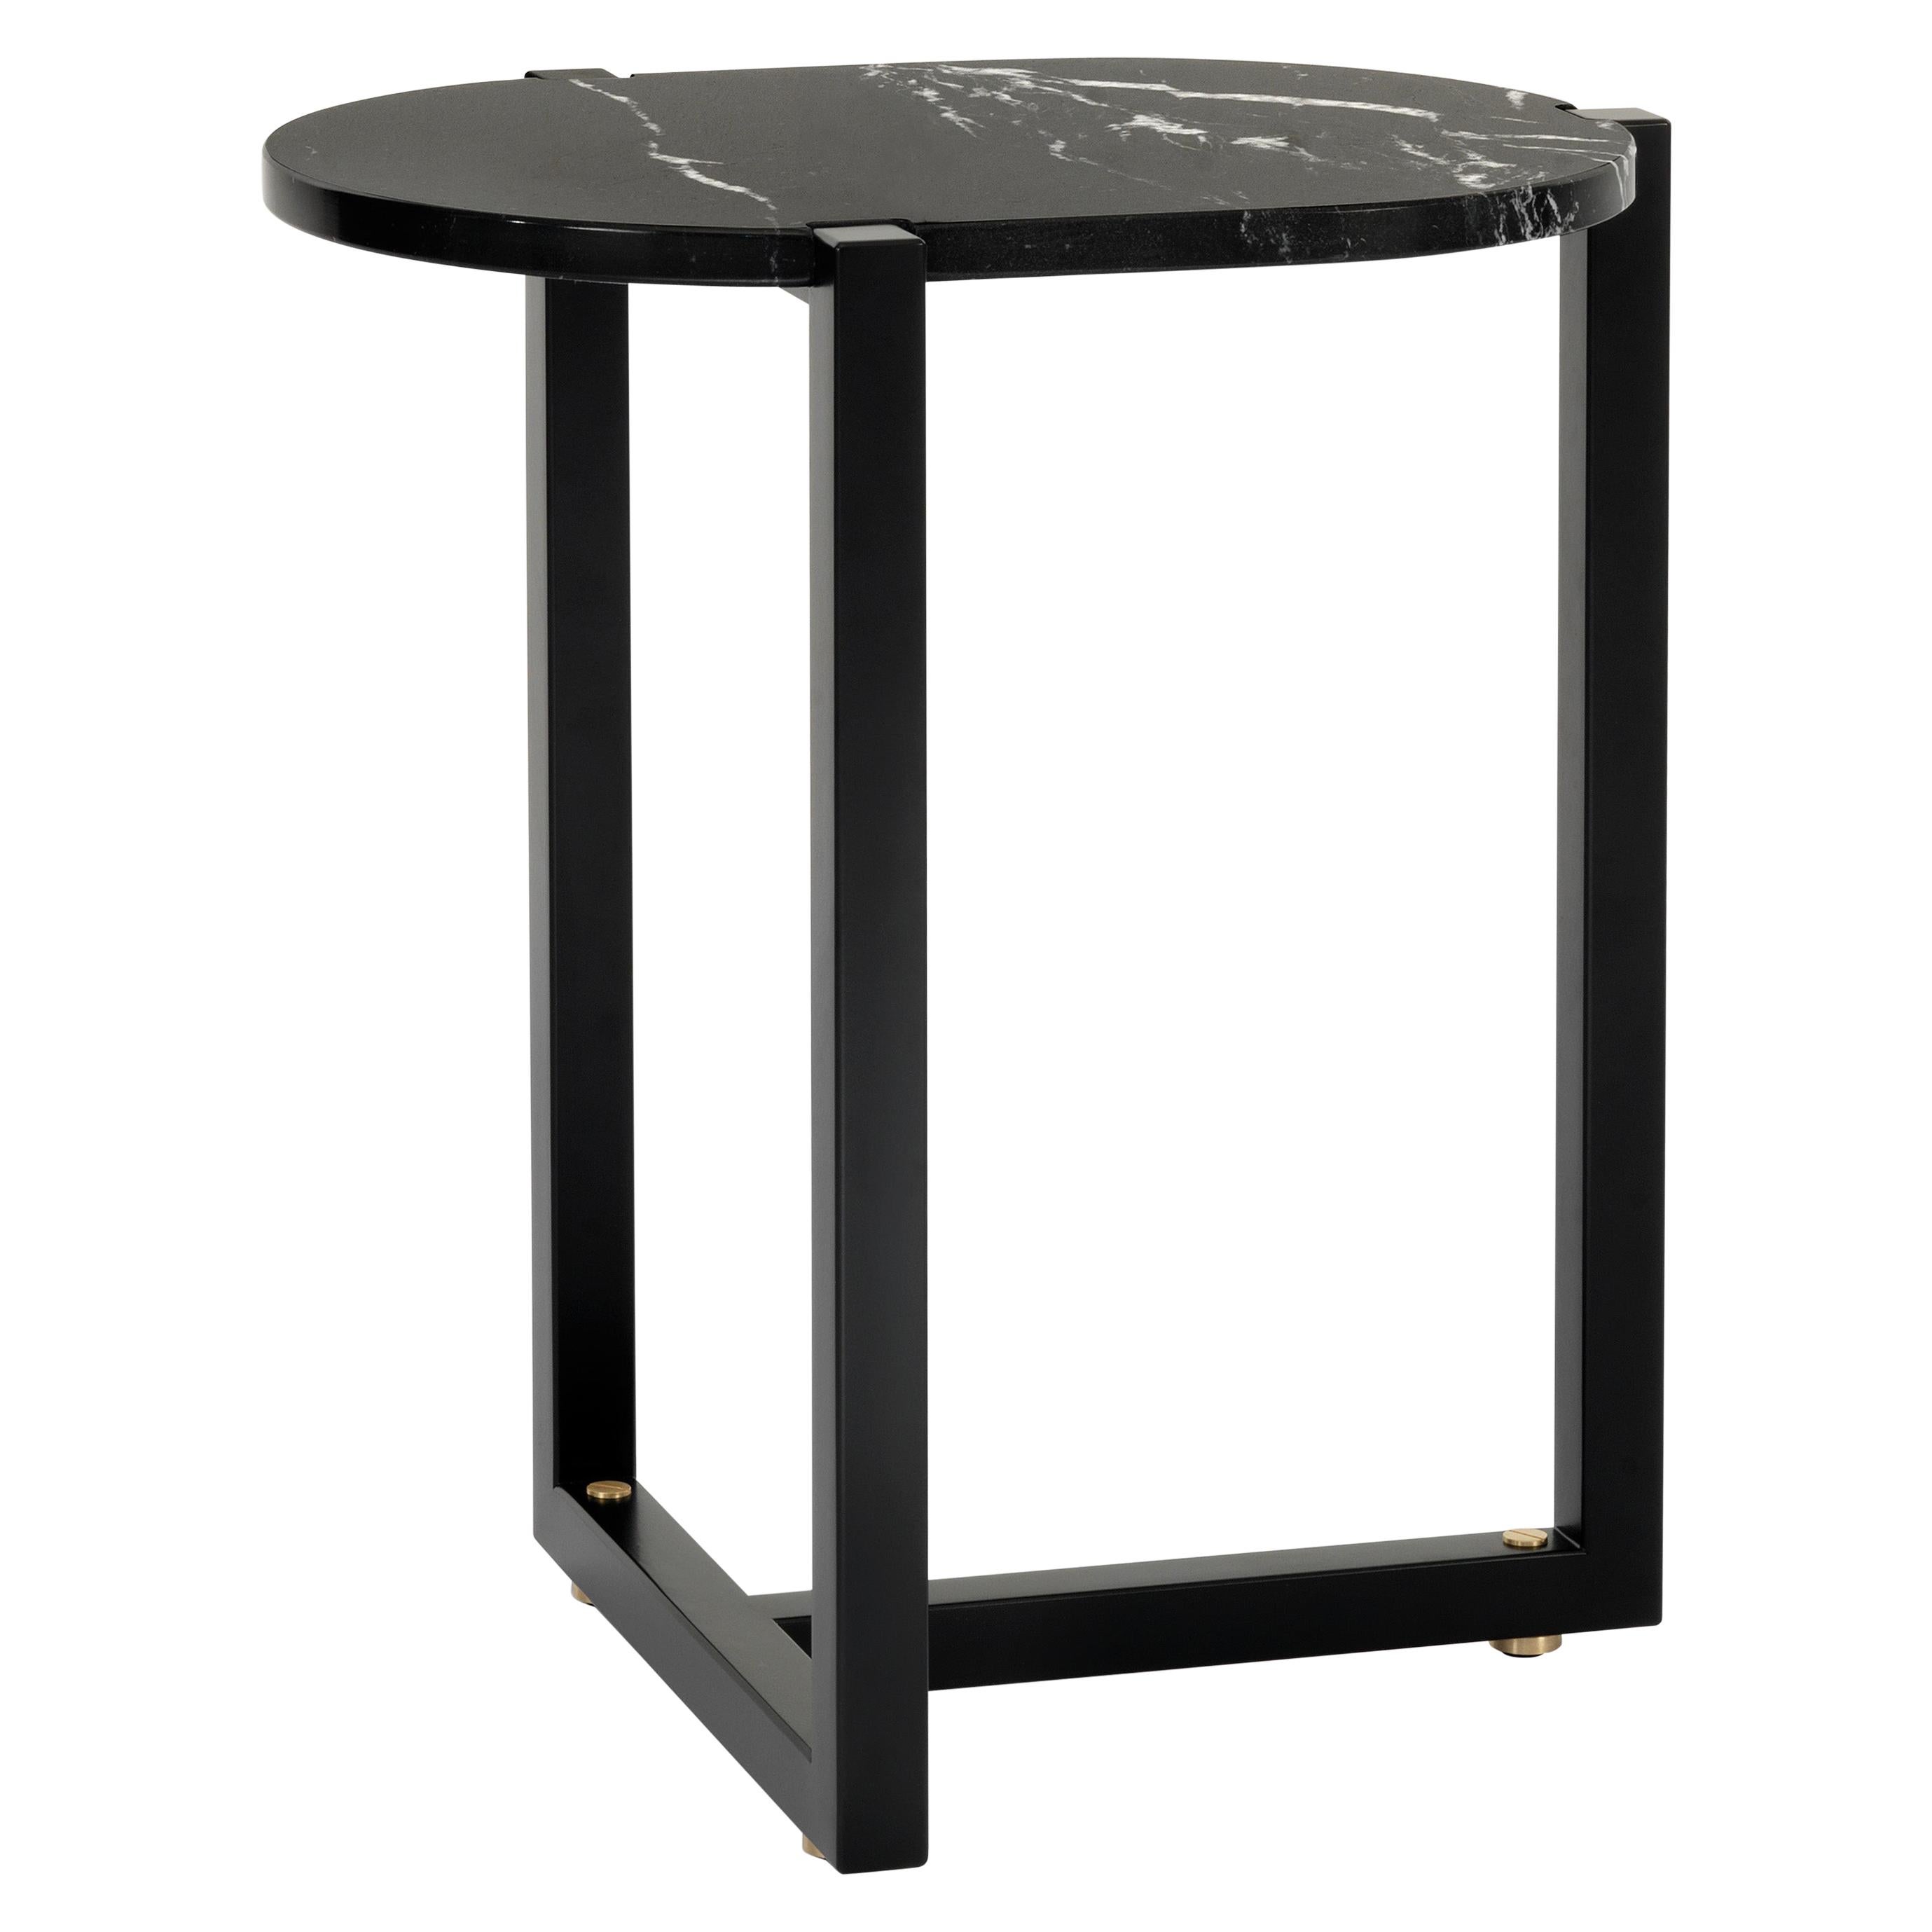 Petite table Arflex Sigmund avec plateau en marquinia noir et base en métal par Studio Asai